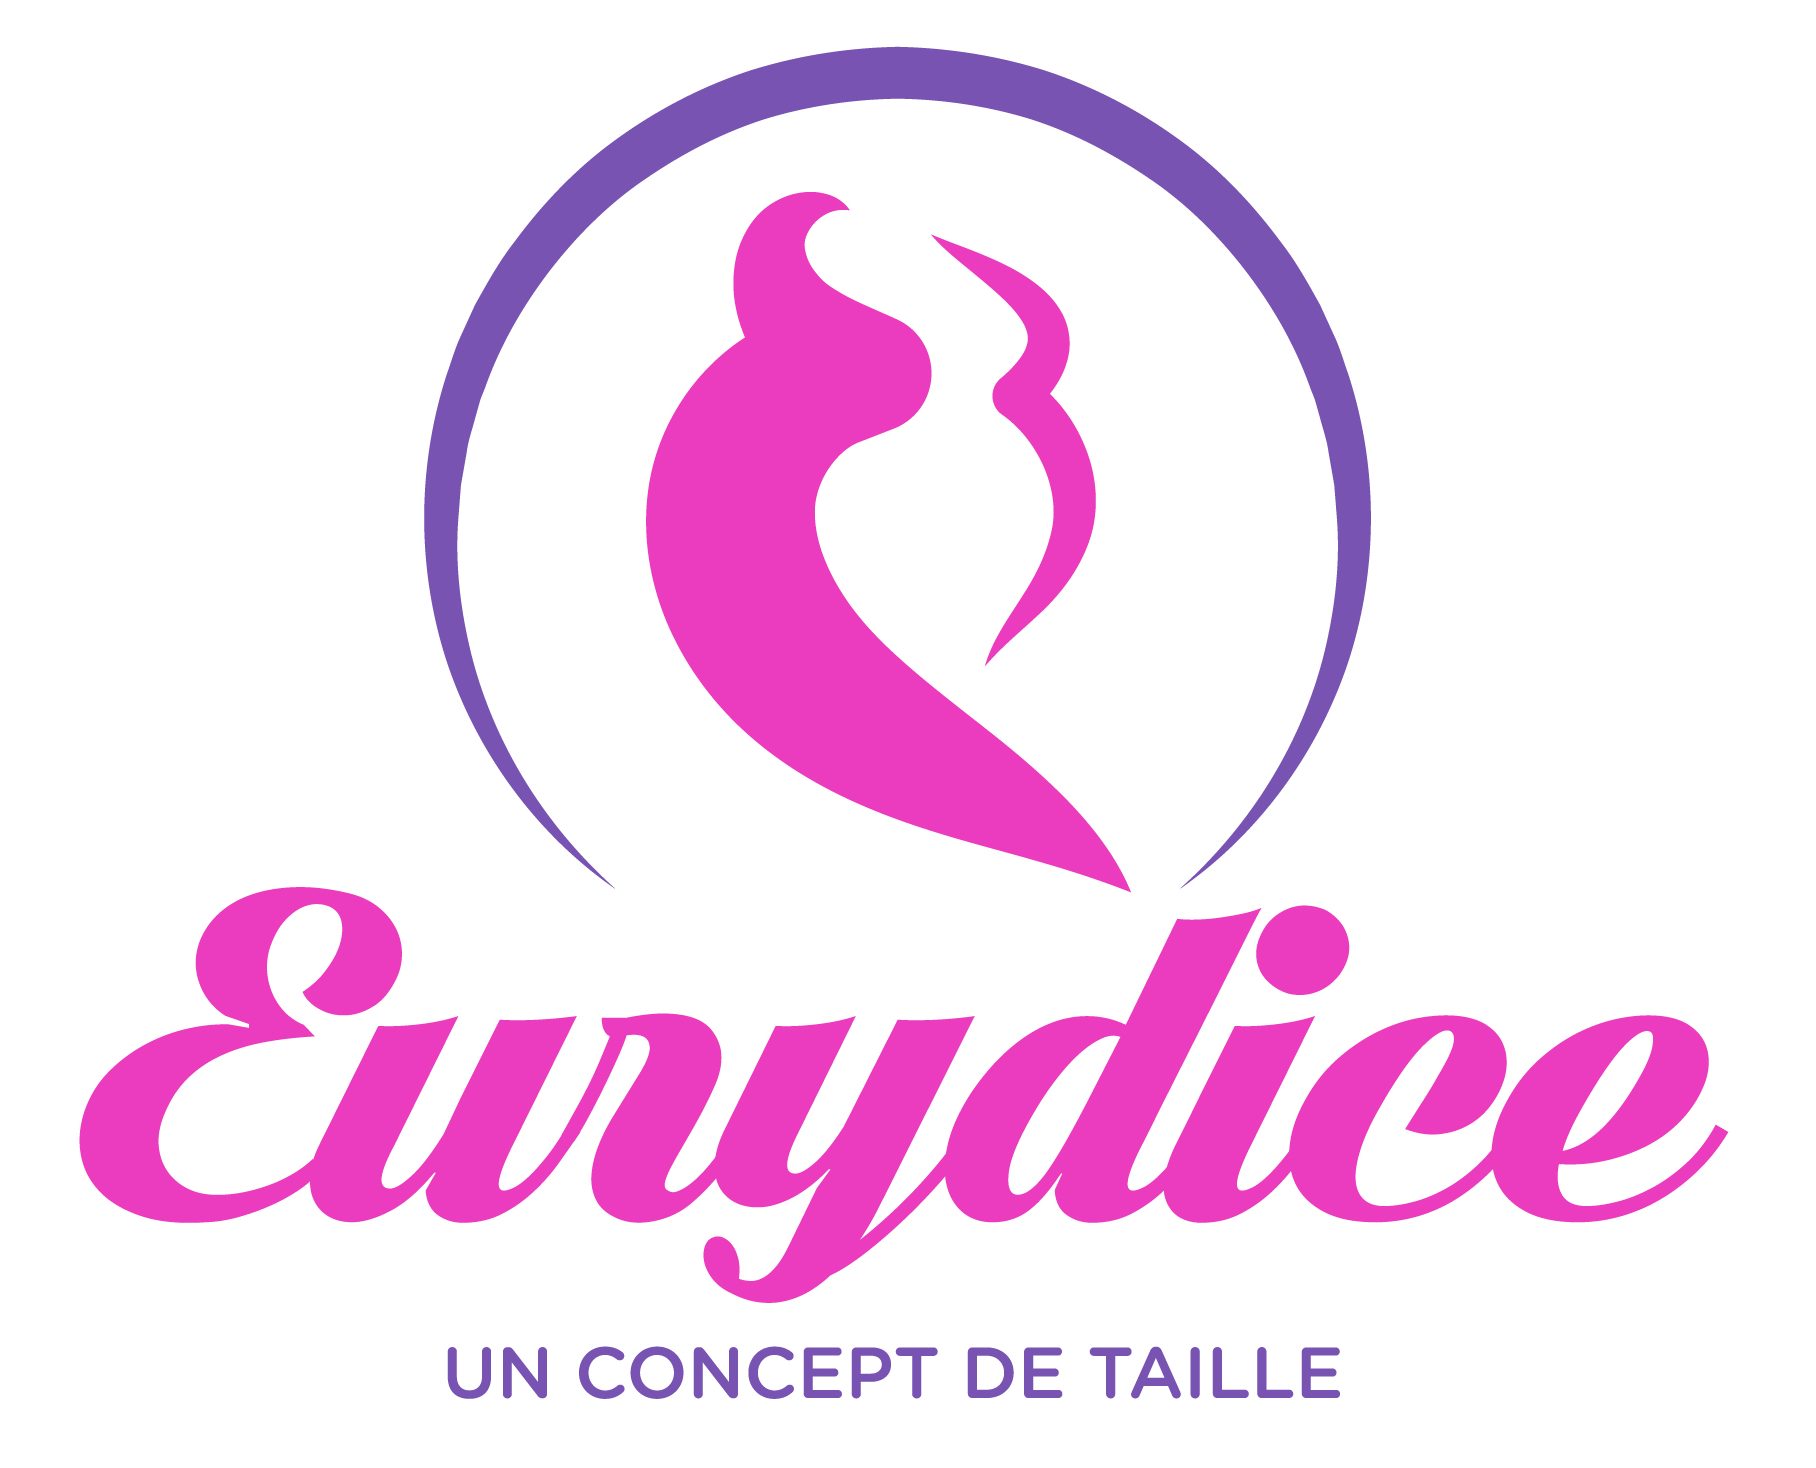 Eurydice